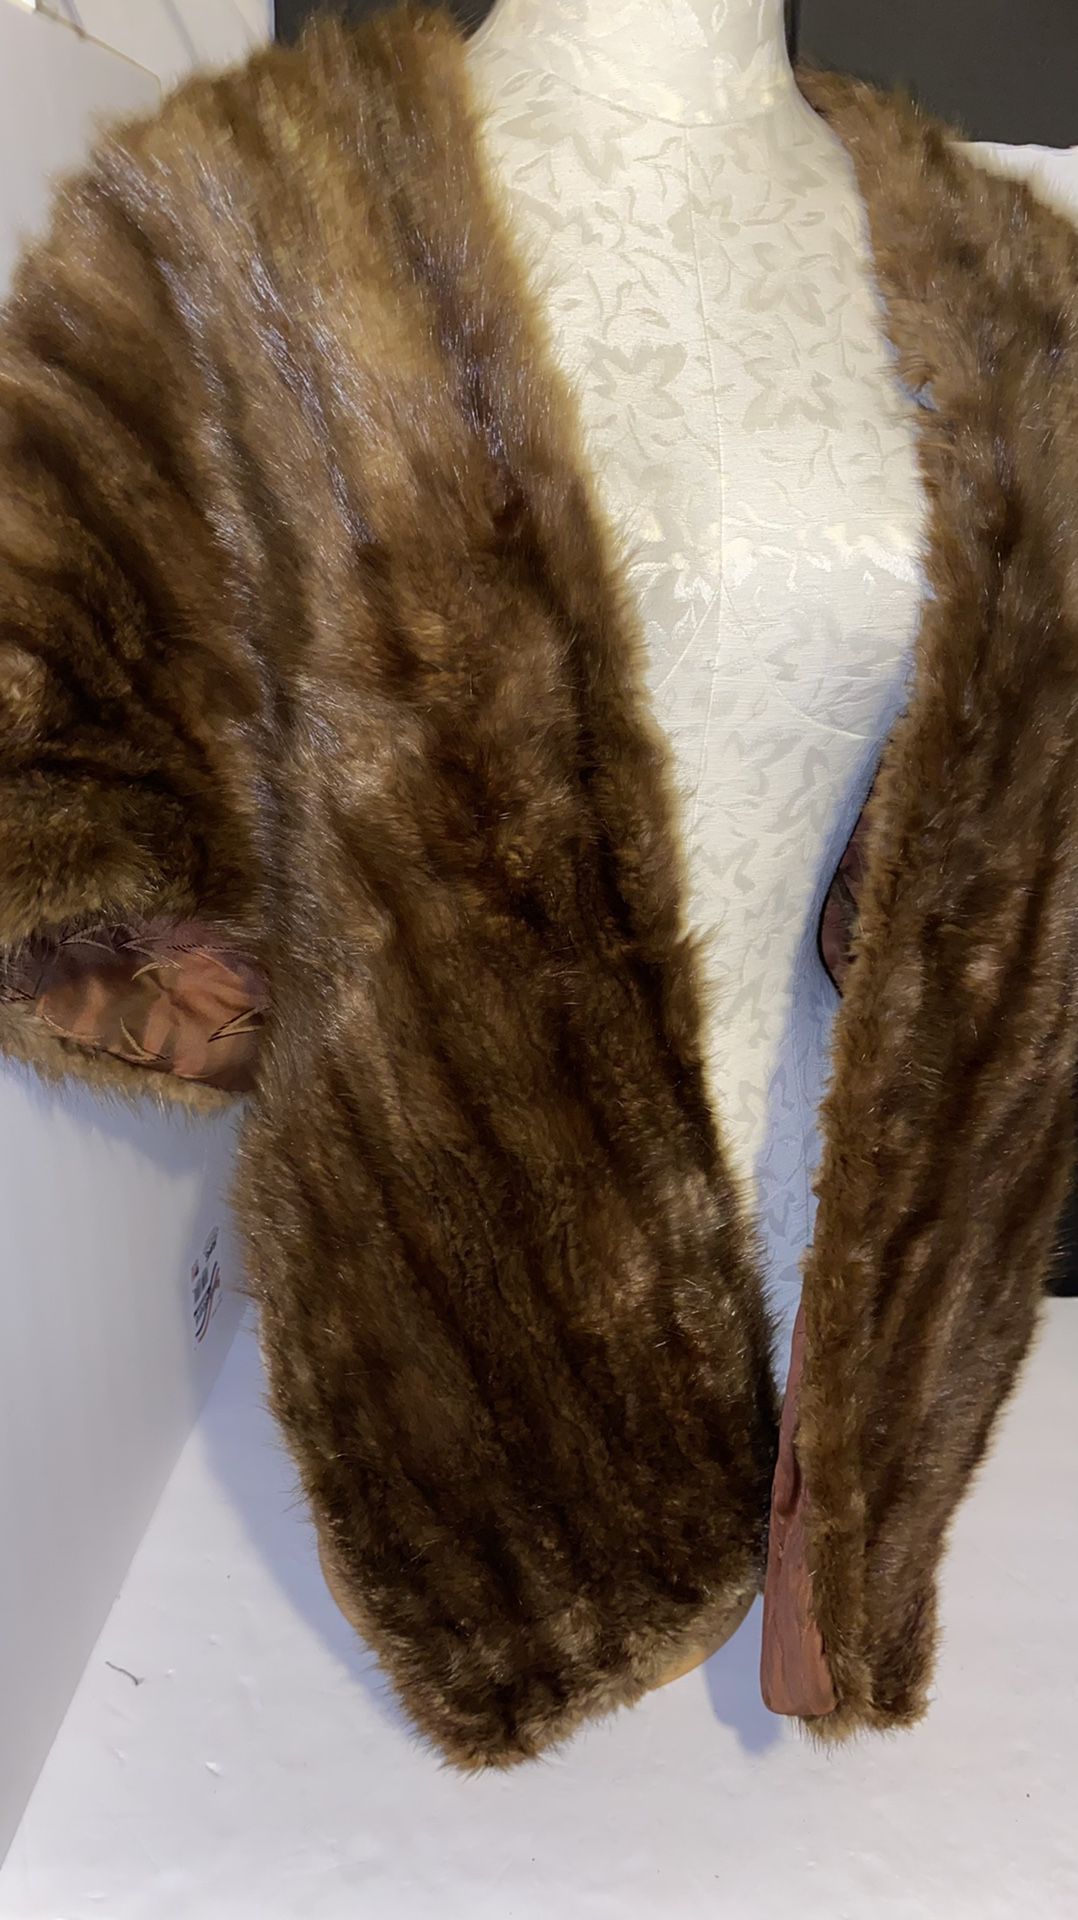 Musk rat fur shawl very nice